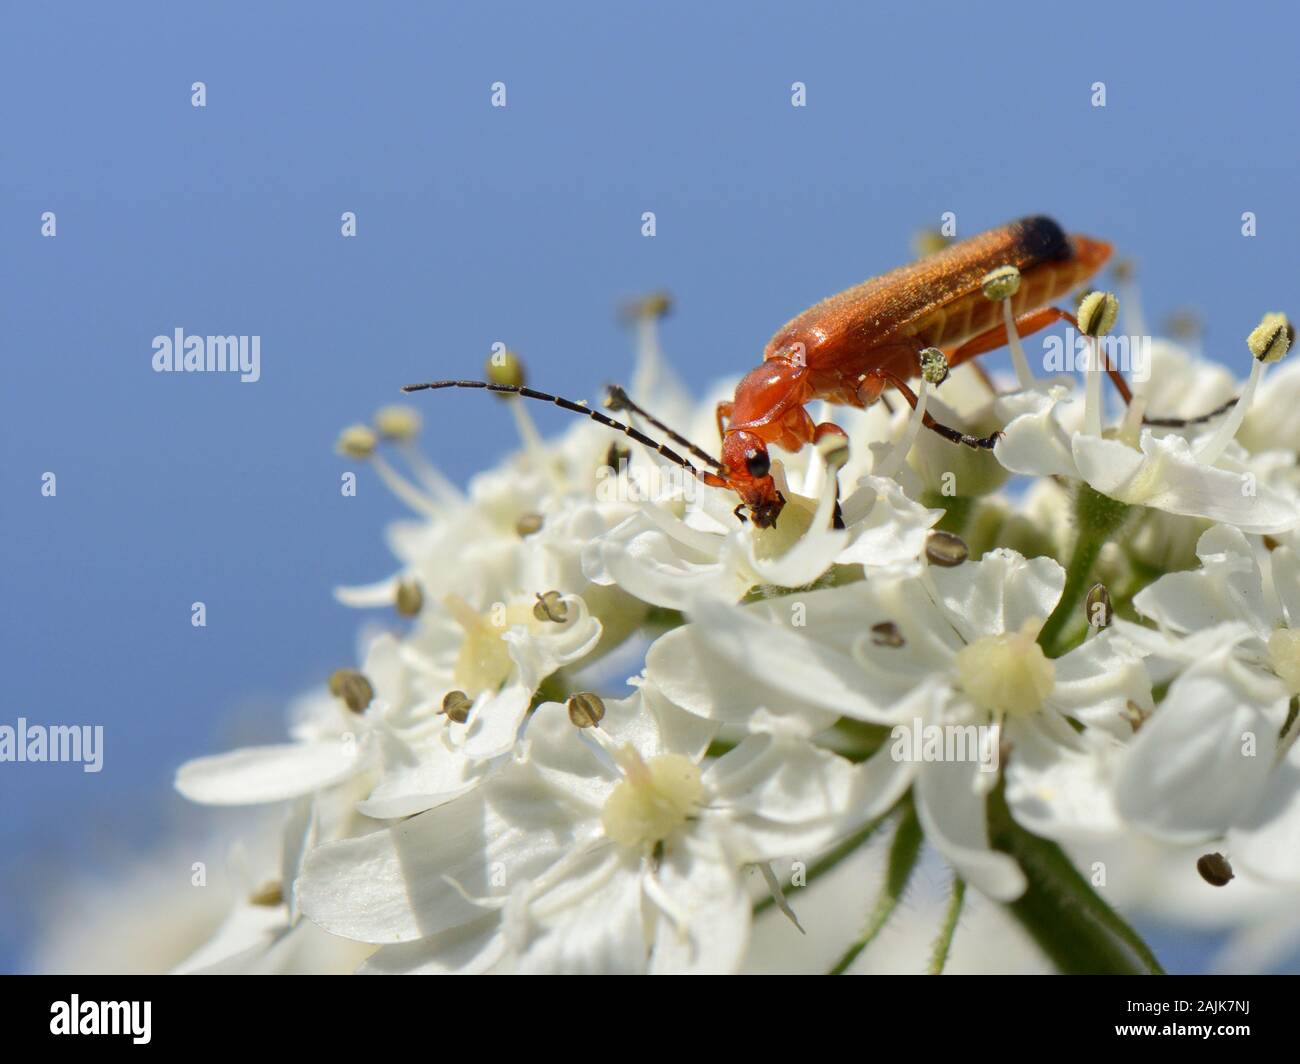 Soldat rouge commun beetle / soldat à bout noir (Rhagonycha fulva) coléoptère se nourrissant de nectar de la berce commune Heracleum sphondylium (fleurs), Royaume-Uni. Banque D'Images